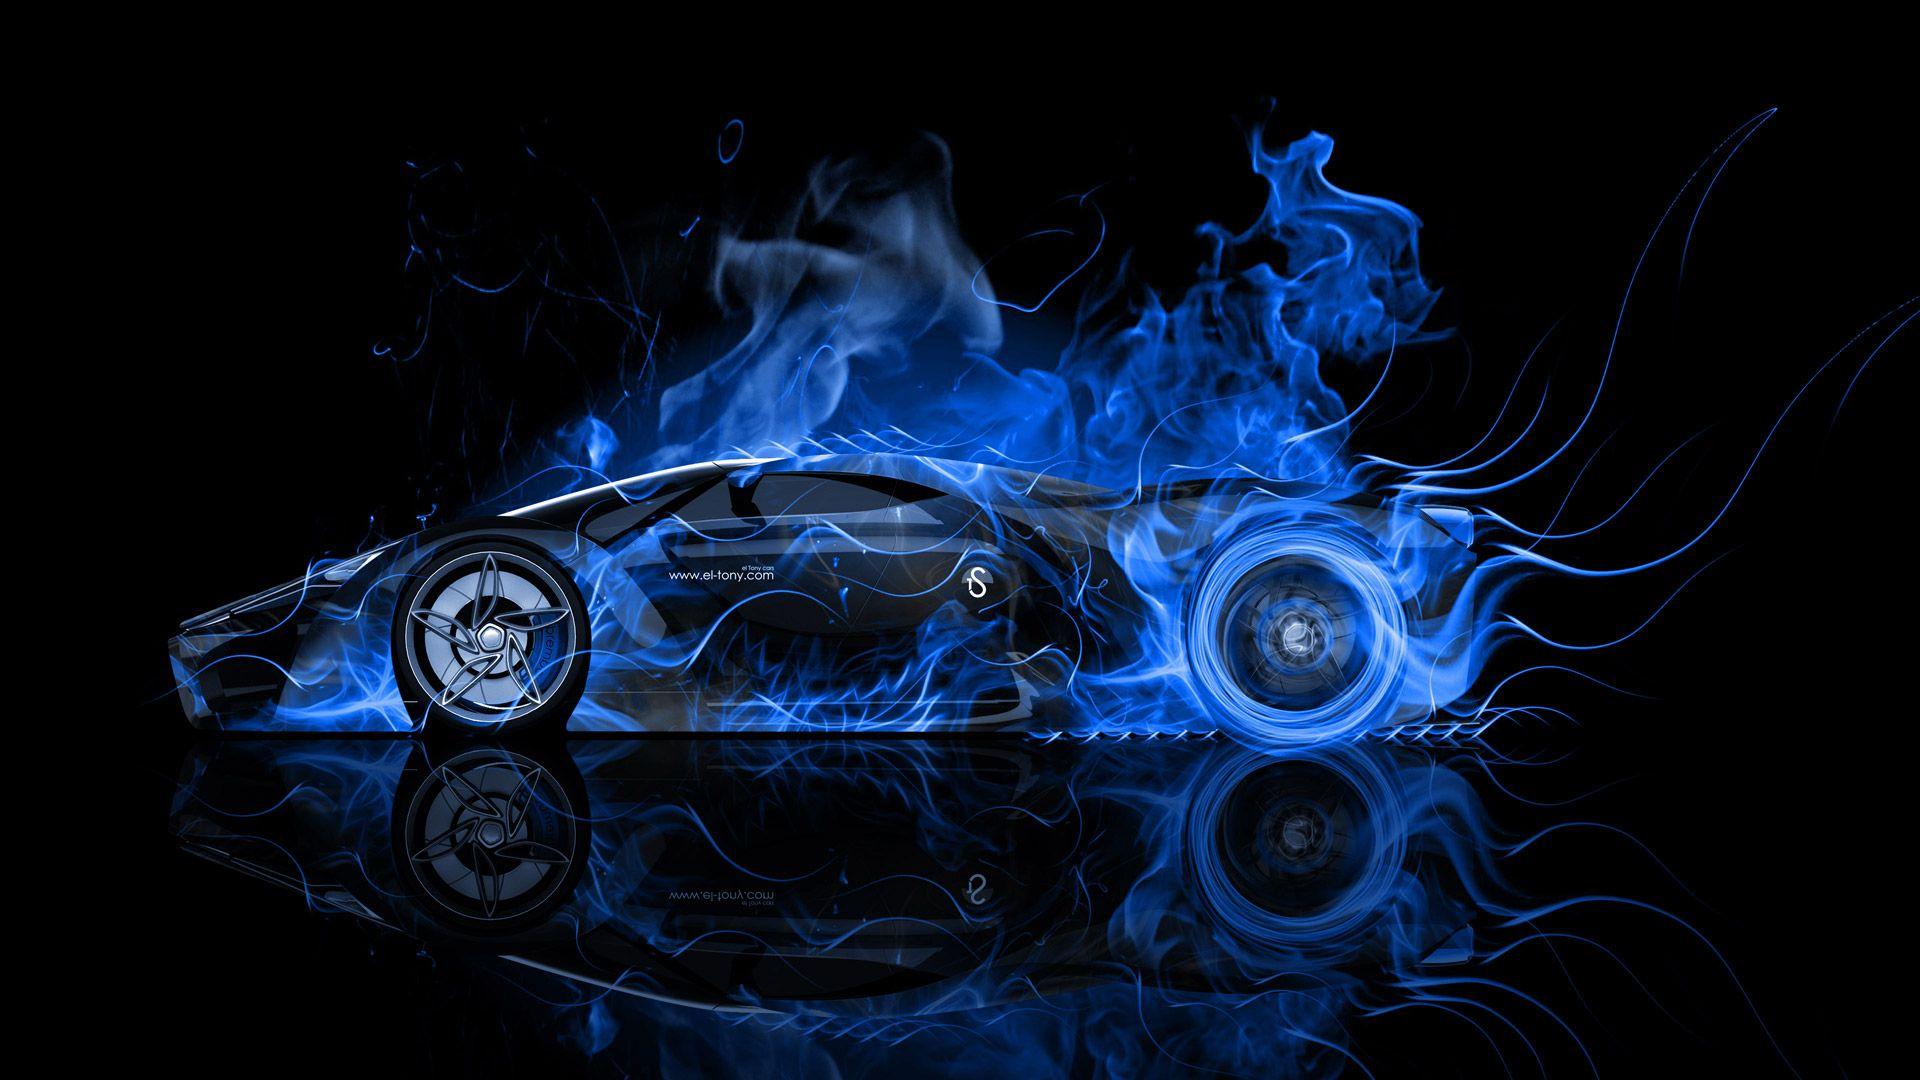 Blue Fire Lamborghini Wallpapers - Top Free Blue Fire Lamborghini ...